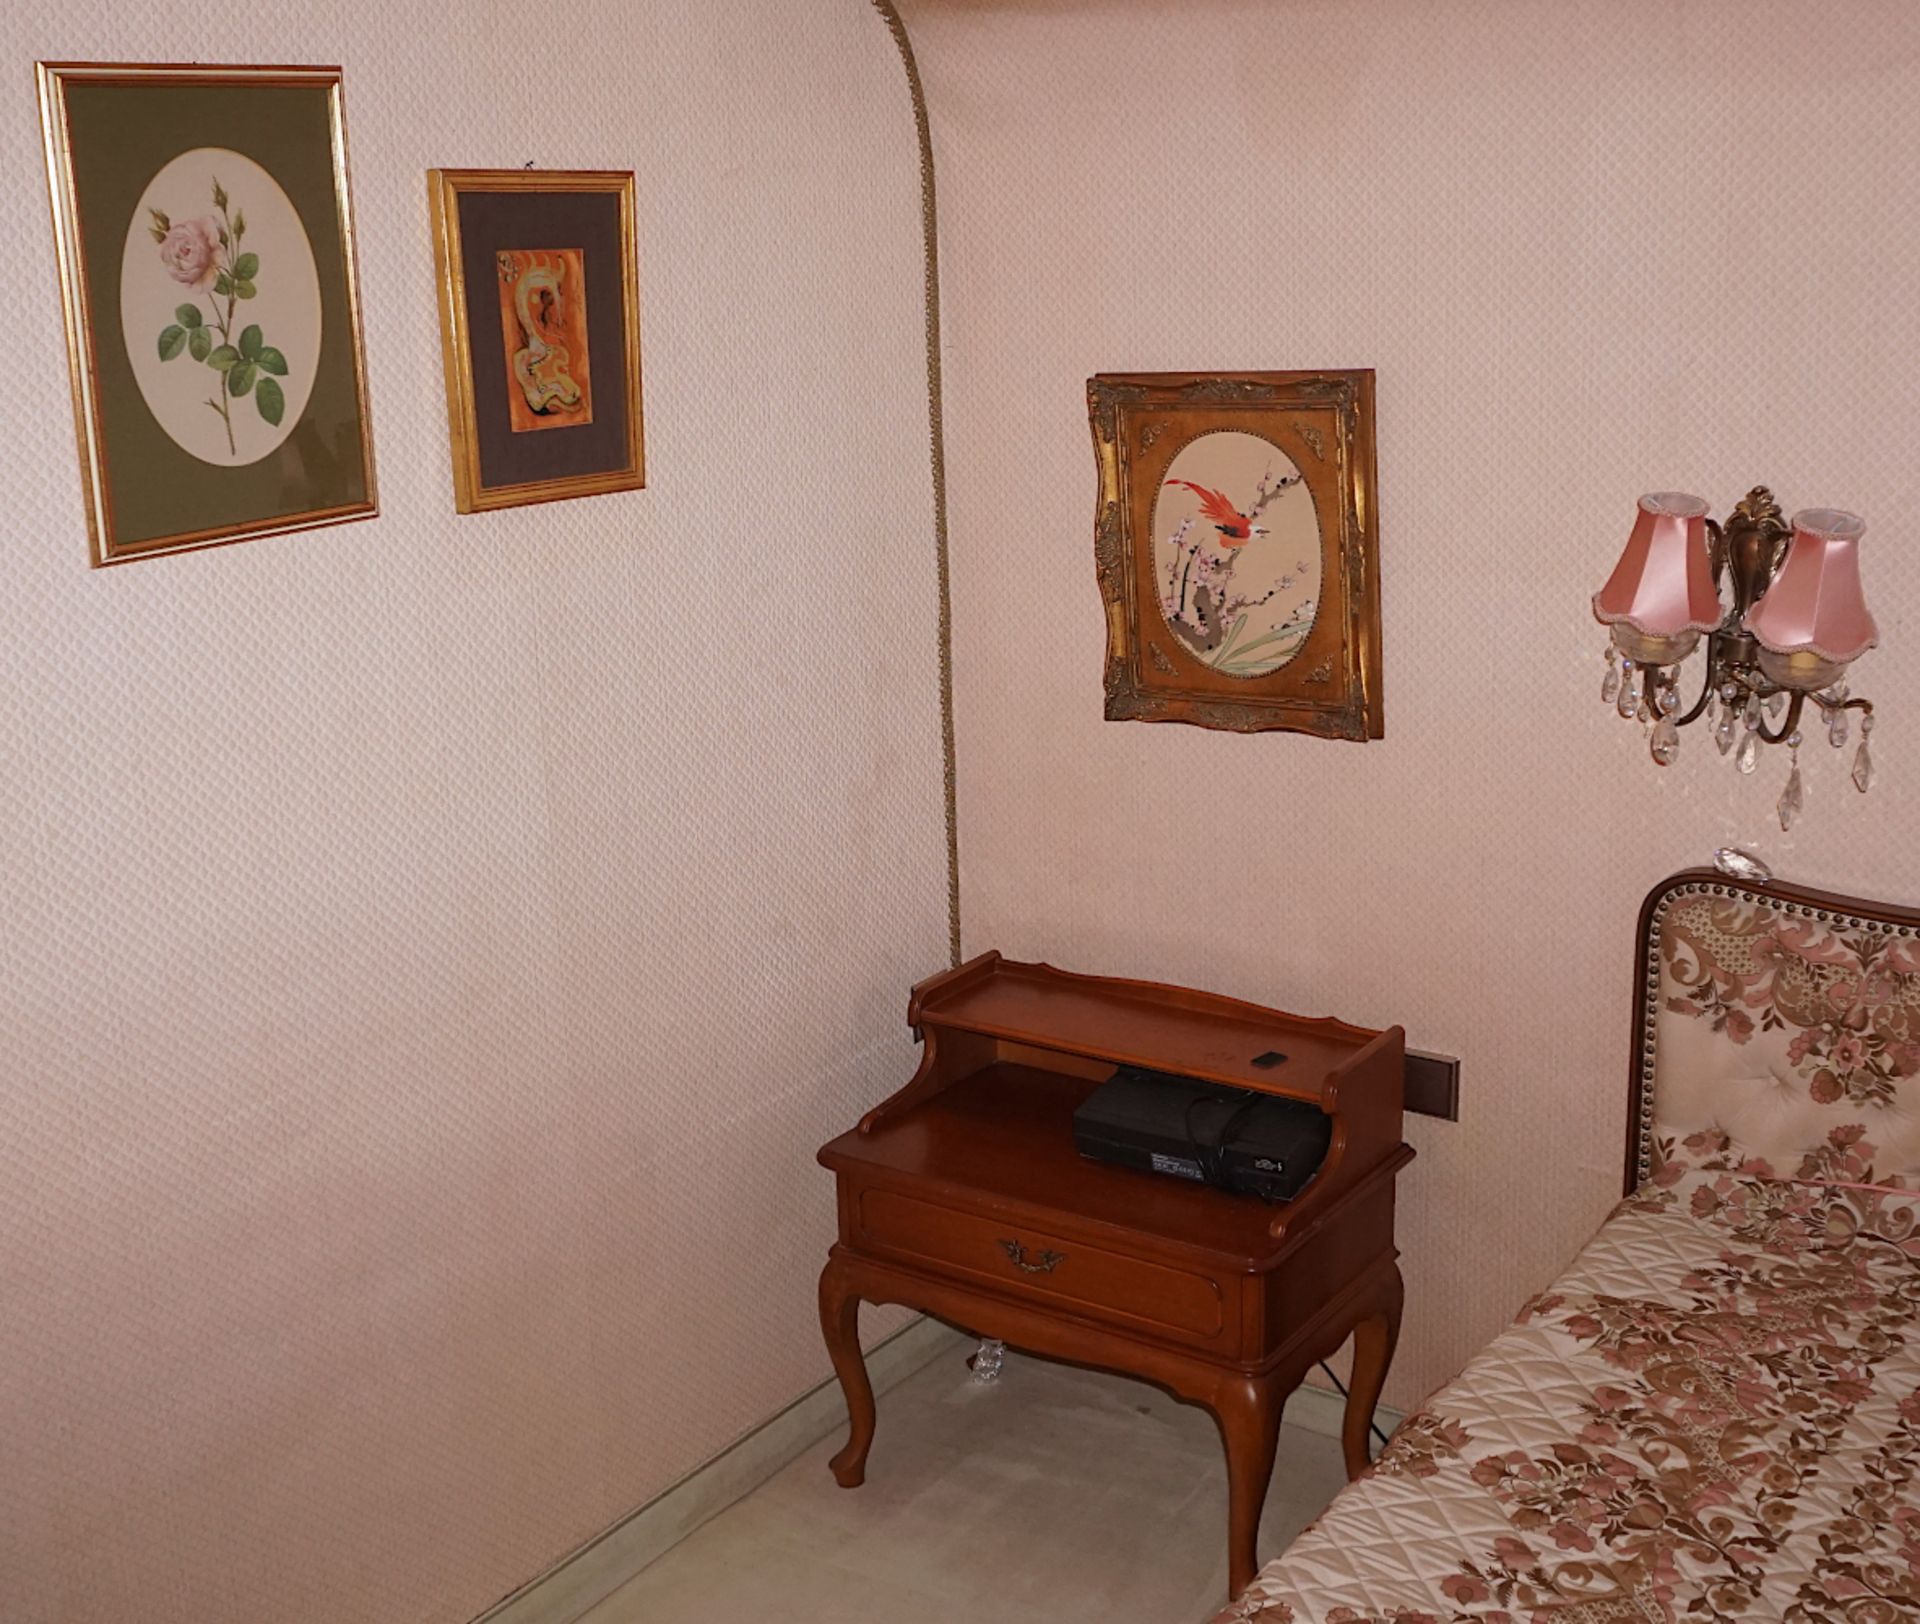 1 Doppelbett Chippendale-Stil mit Nachtkästchen, Klimaanlage, Lampen, Bilder, - Bild 3 aus 4